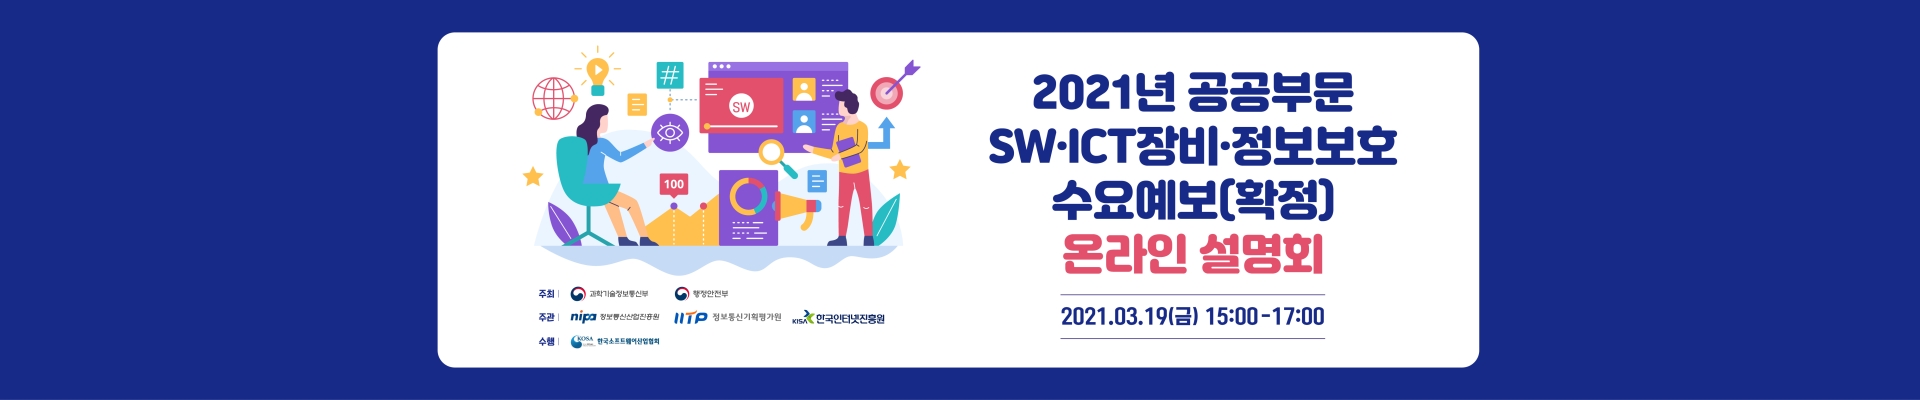 2021년 공공부문 SW.ICT장비.정보보호 수요예보(확정) 온라인 설명회